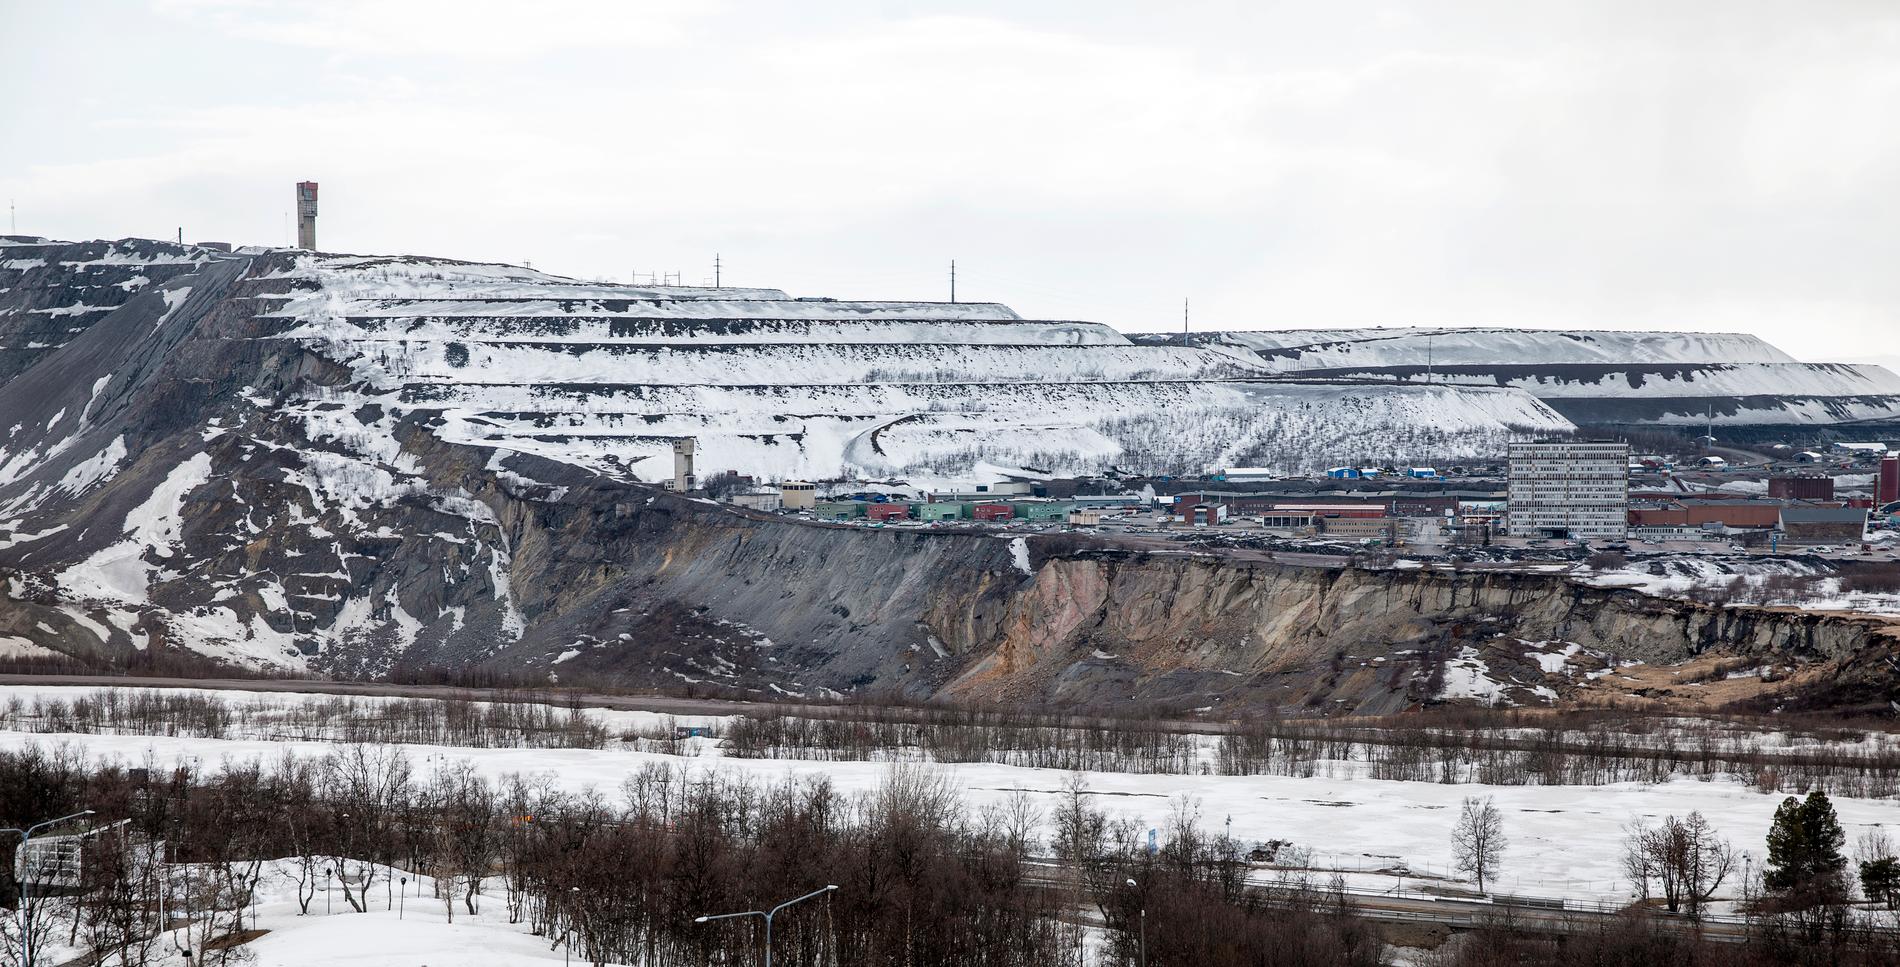 Skalvet mätte 4,9 på Richterskalan och var det största i en svensk gruva någonsin.